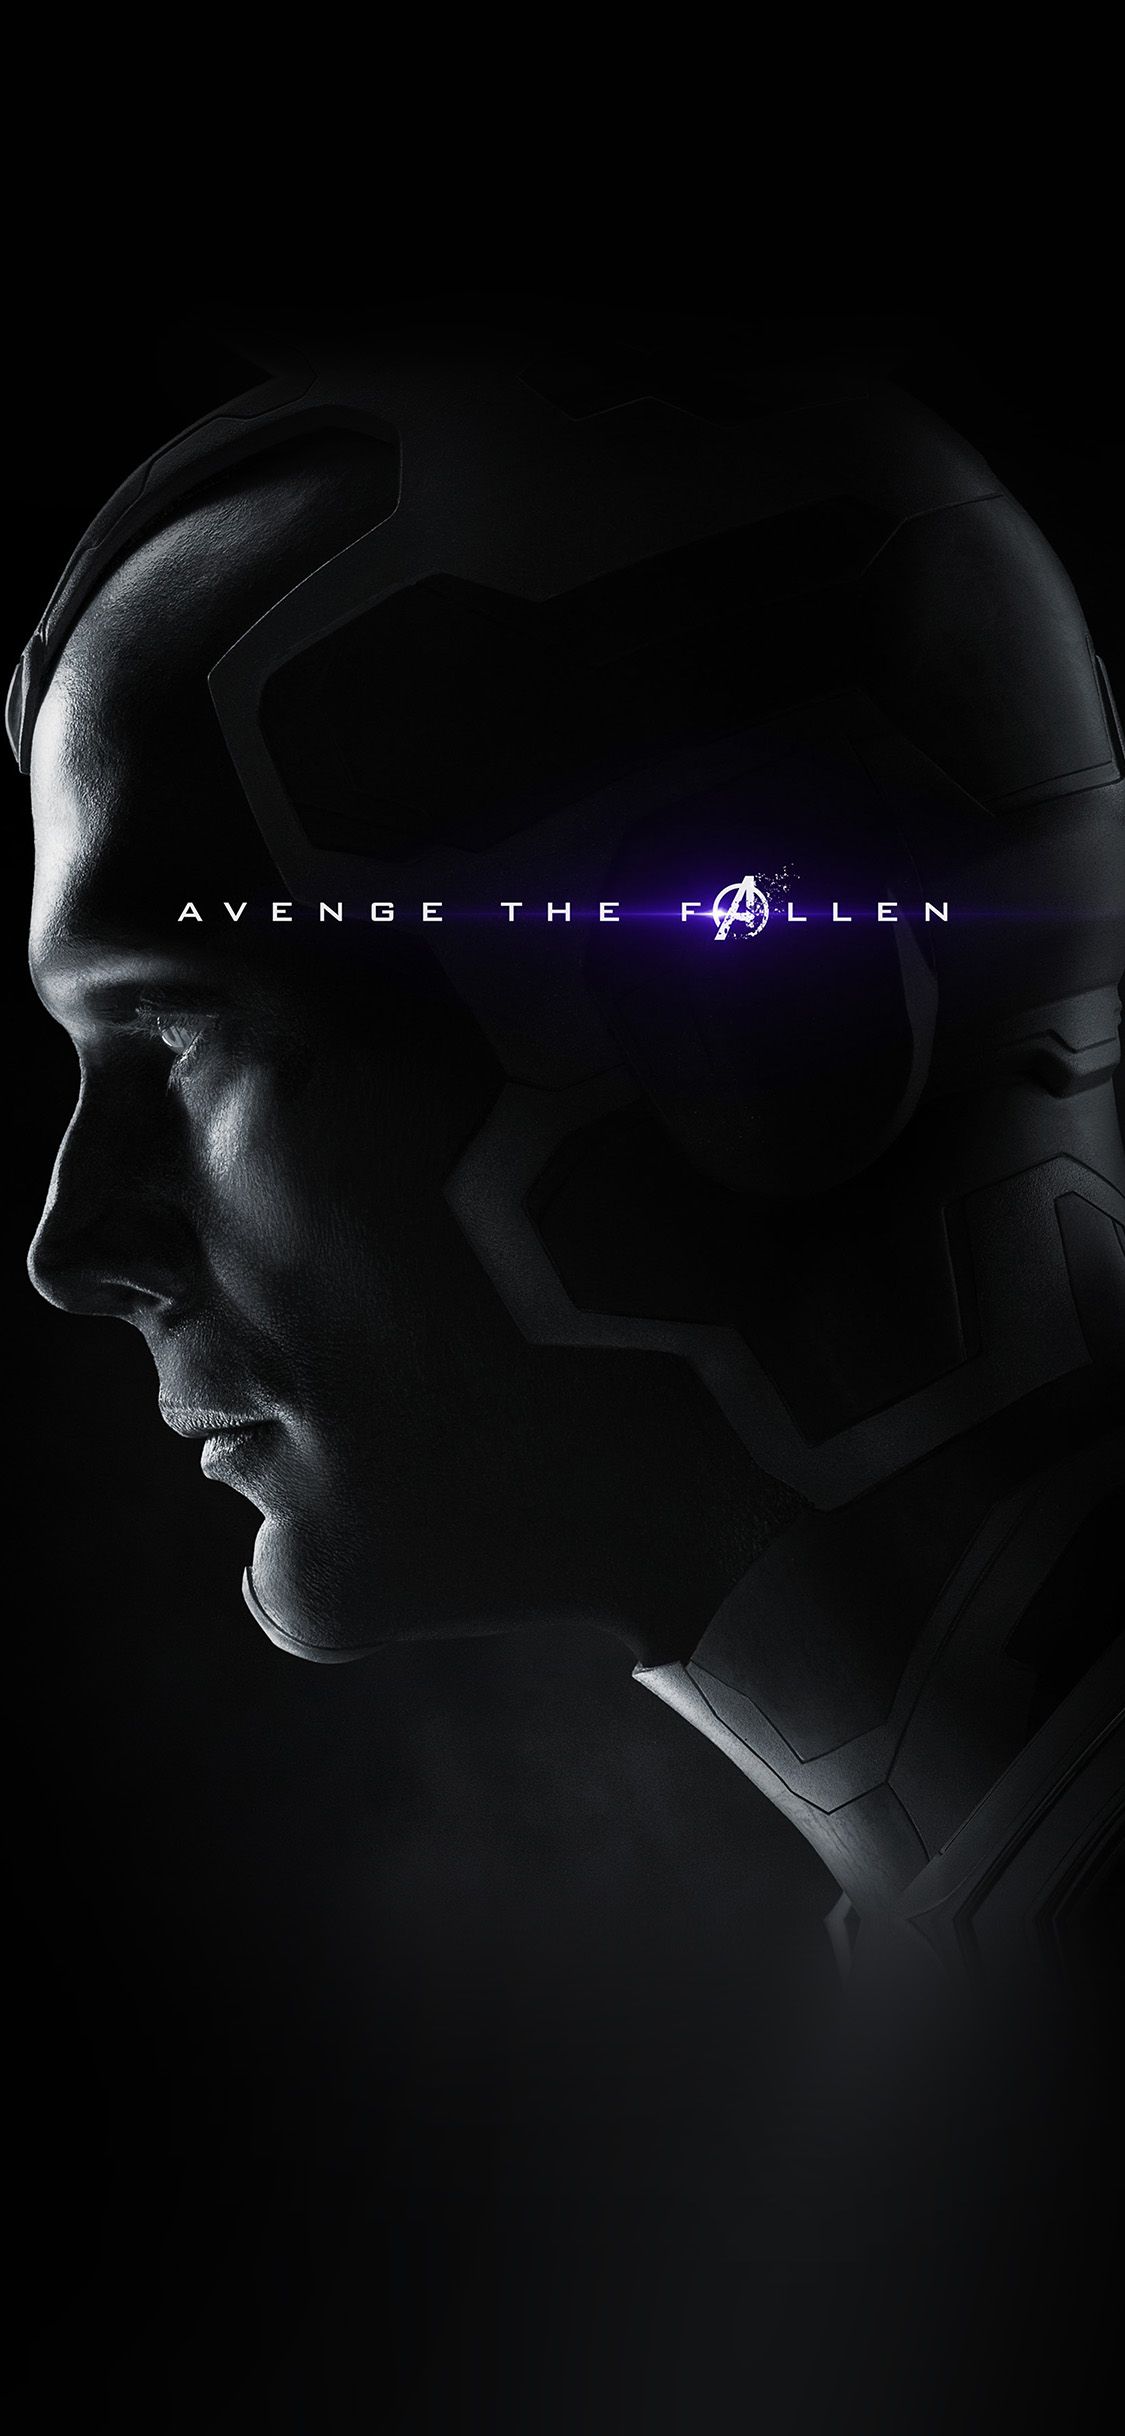 Avengers Poster Endgame Hero Film Marvel Chractor Art Vision